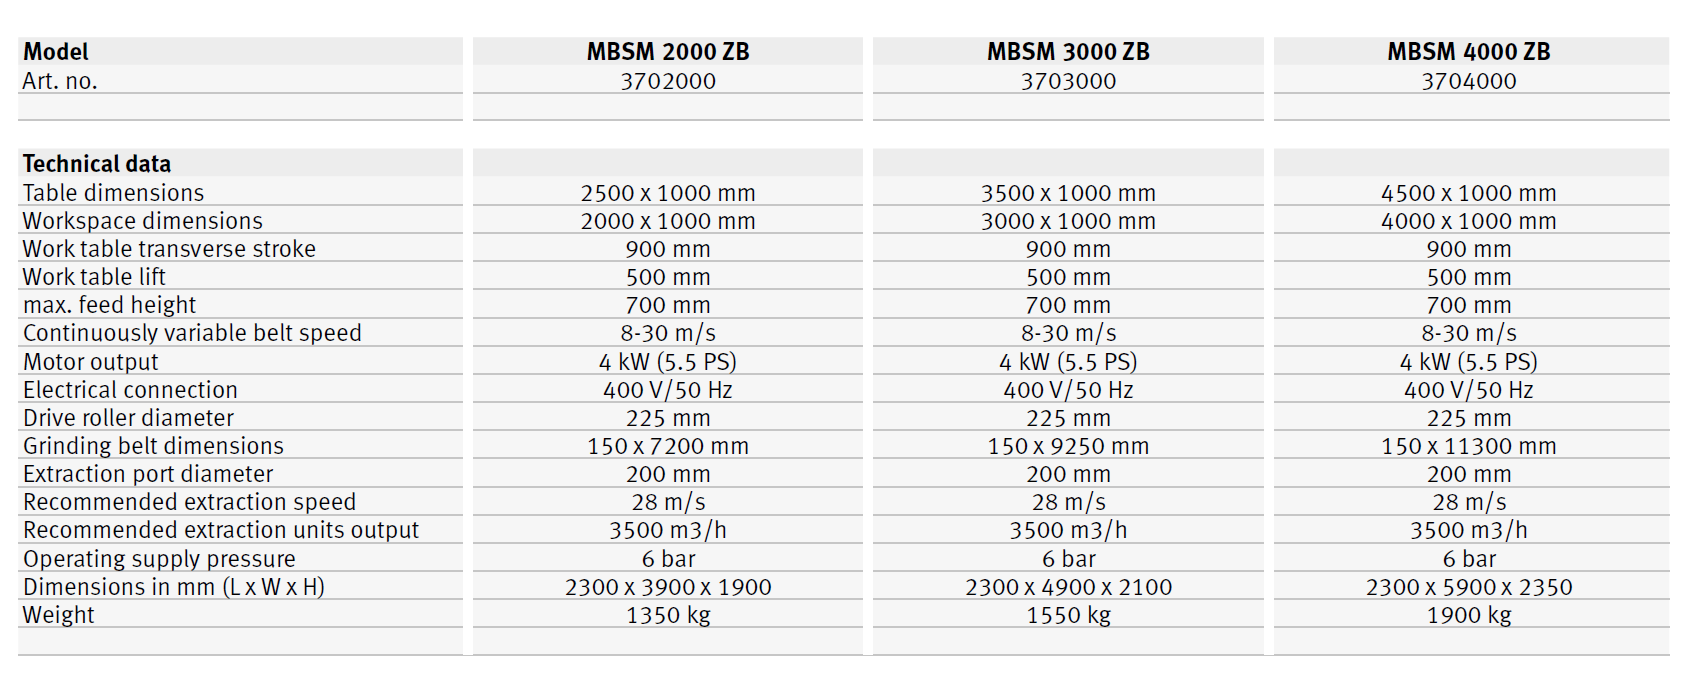 MBSM 2000 ZB / MBSM 3000 ZB / MBSM 4000 ZB